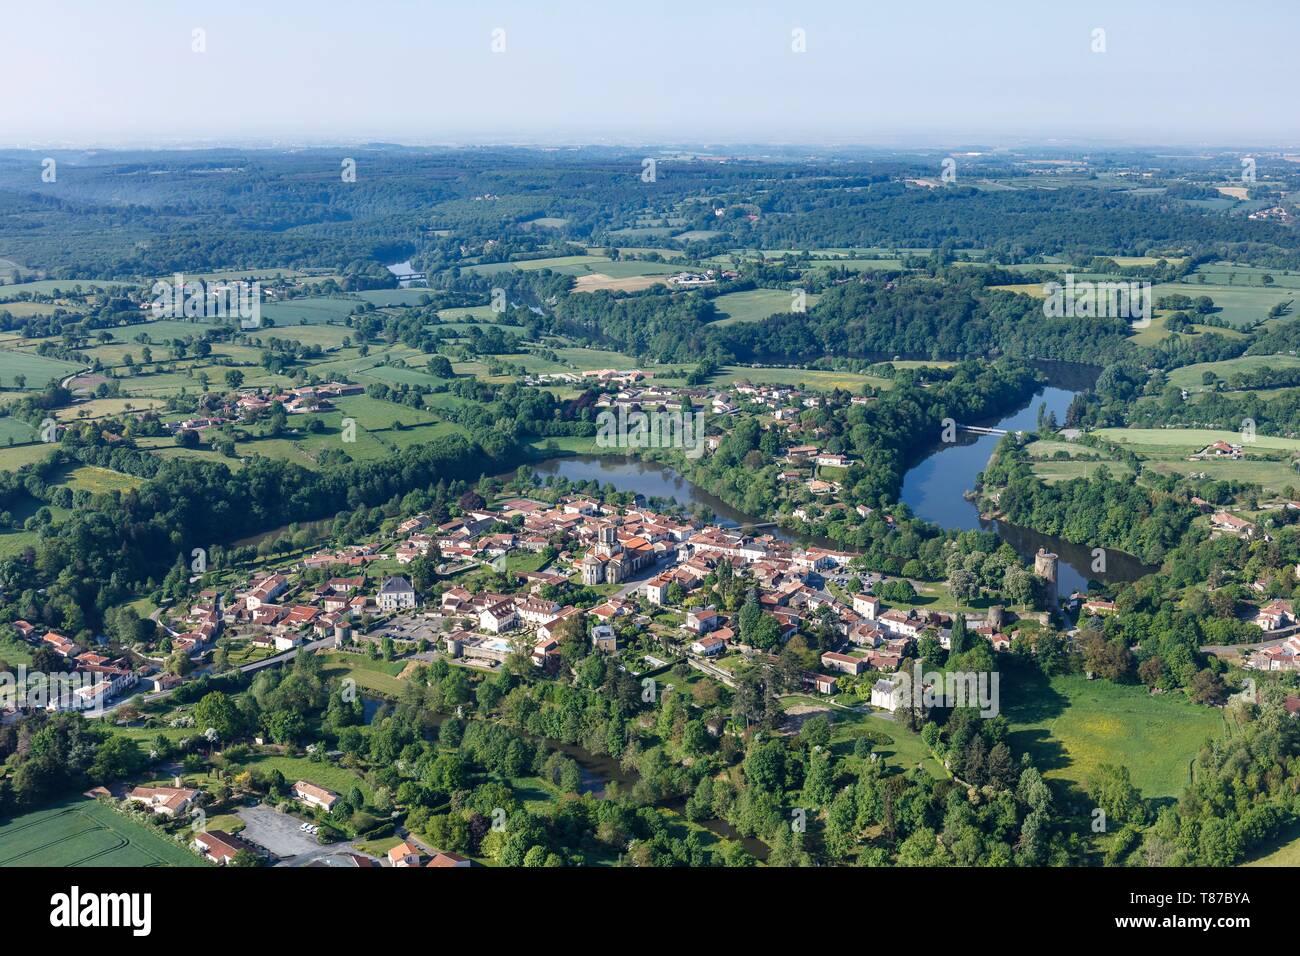 France, Vendee, Vouvant, labelled Les Plus Beaux Villages de France (The Most Beautiful Villages of France) (aerial view) Stock Photo